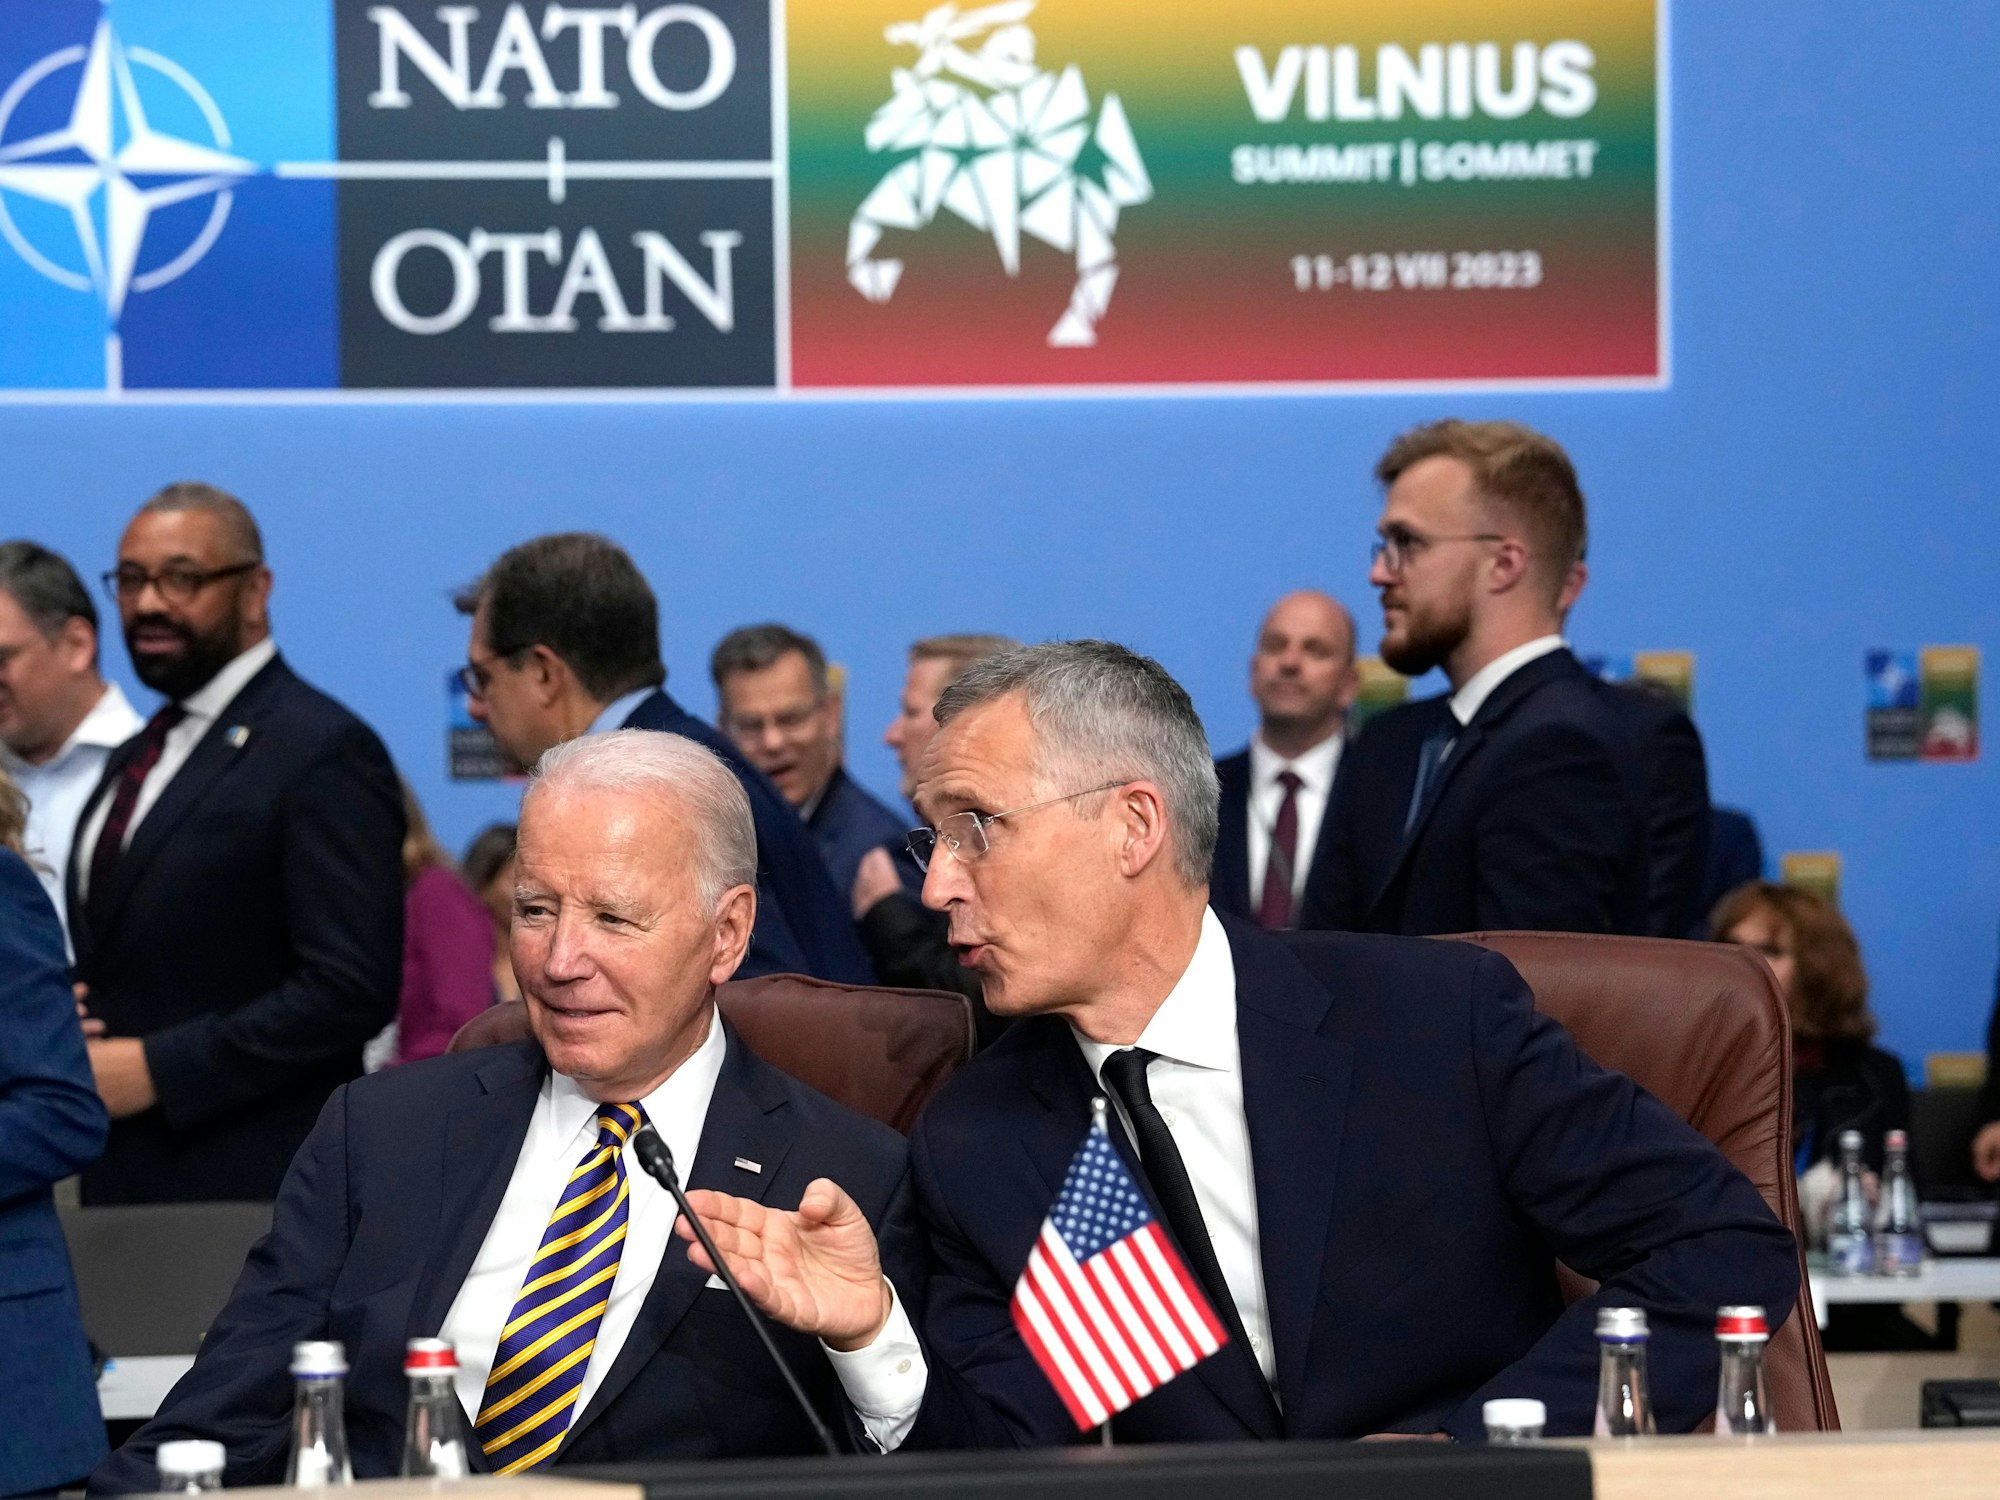 NATO-Generalsekretär Jens Stoltenberg (r.) beim NATO-Gipfel in Vilnius neben US-Präsident Joe Biden im Juli 2023: Beim Gipfel klagt ein Mitarbeiter des Pentagon über Symptome, die dem Havanna-Syndrom ähneln.